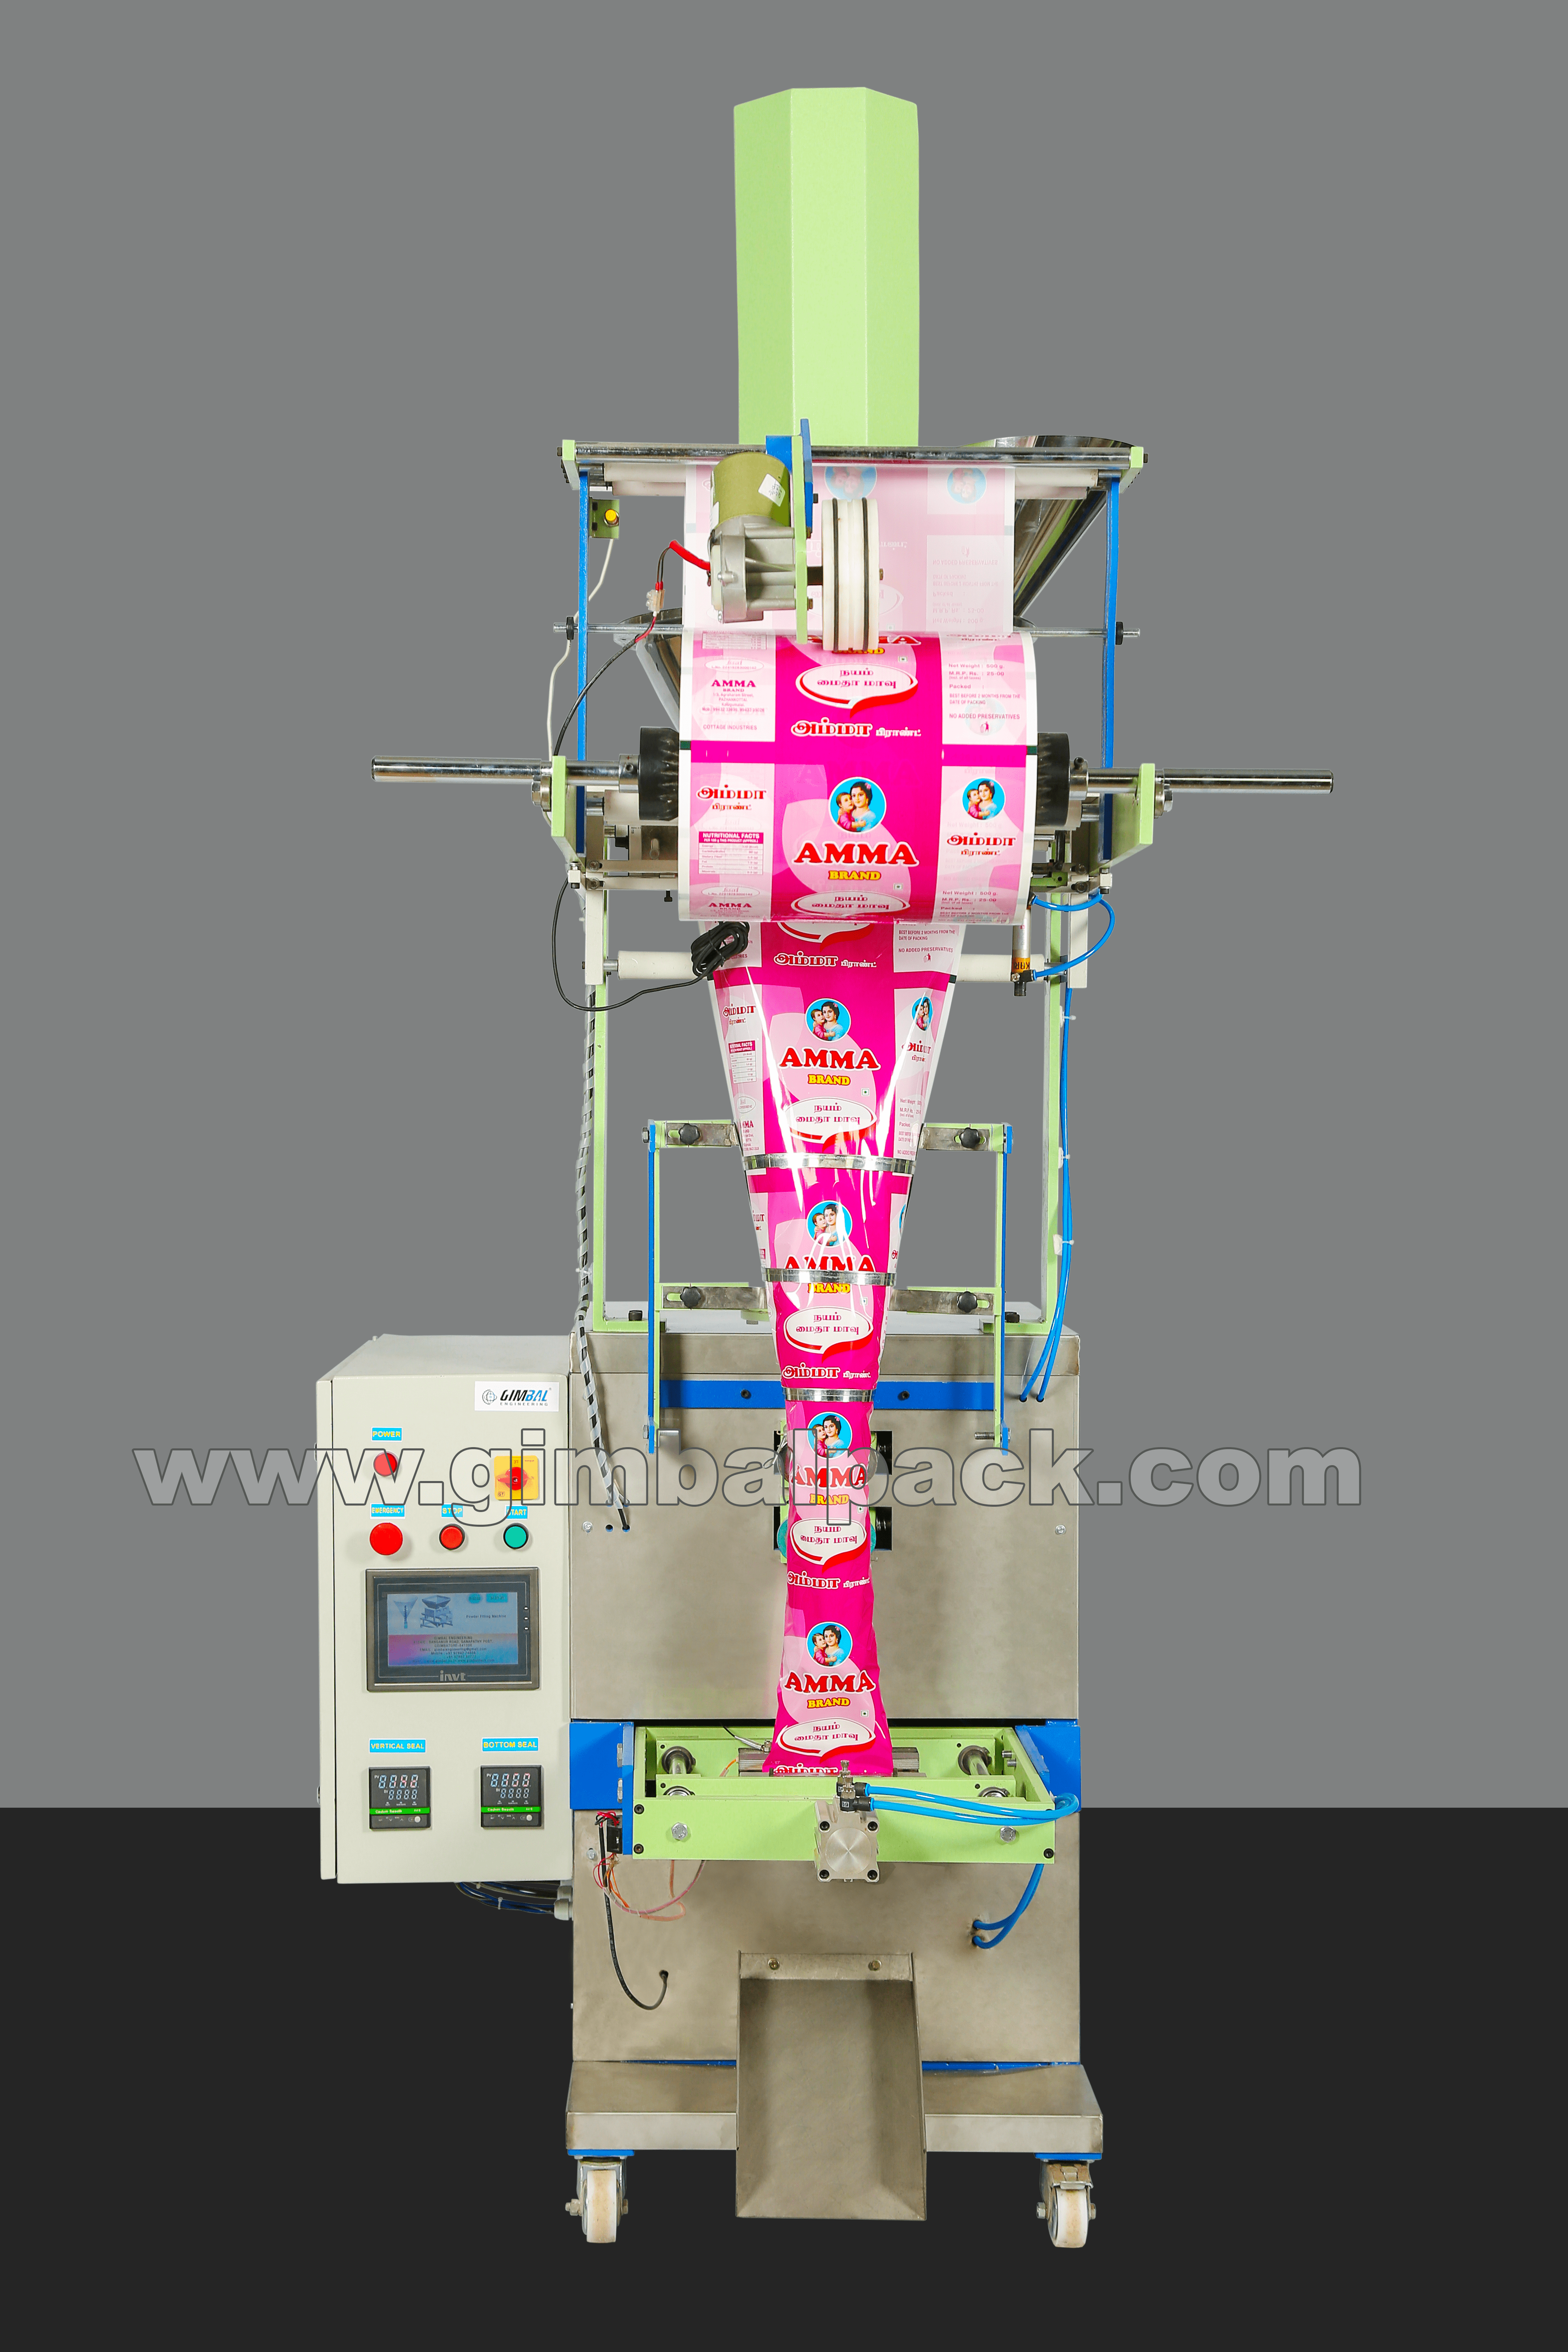 Sweet Neem Powder Packing Machine in Coimbatore